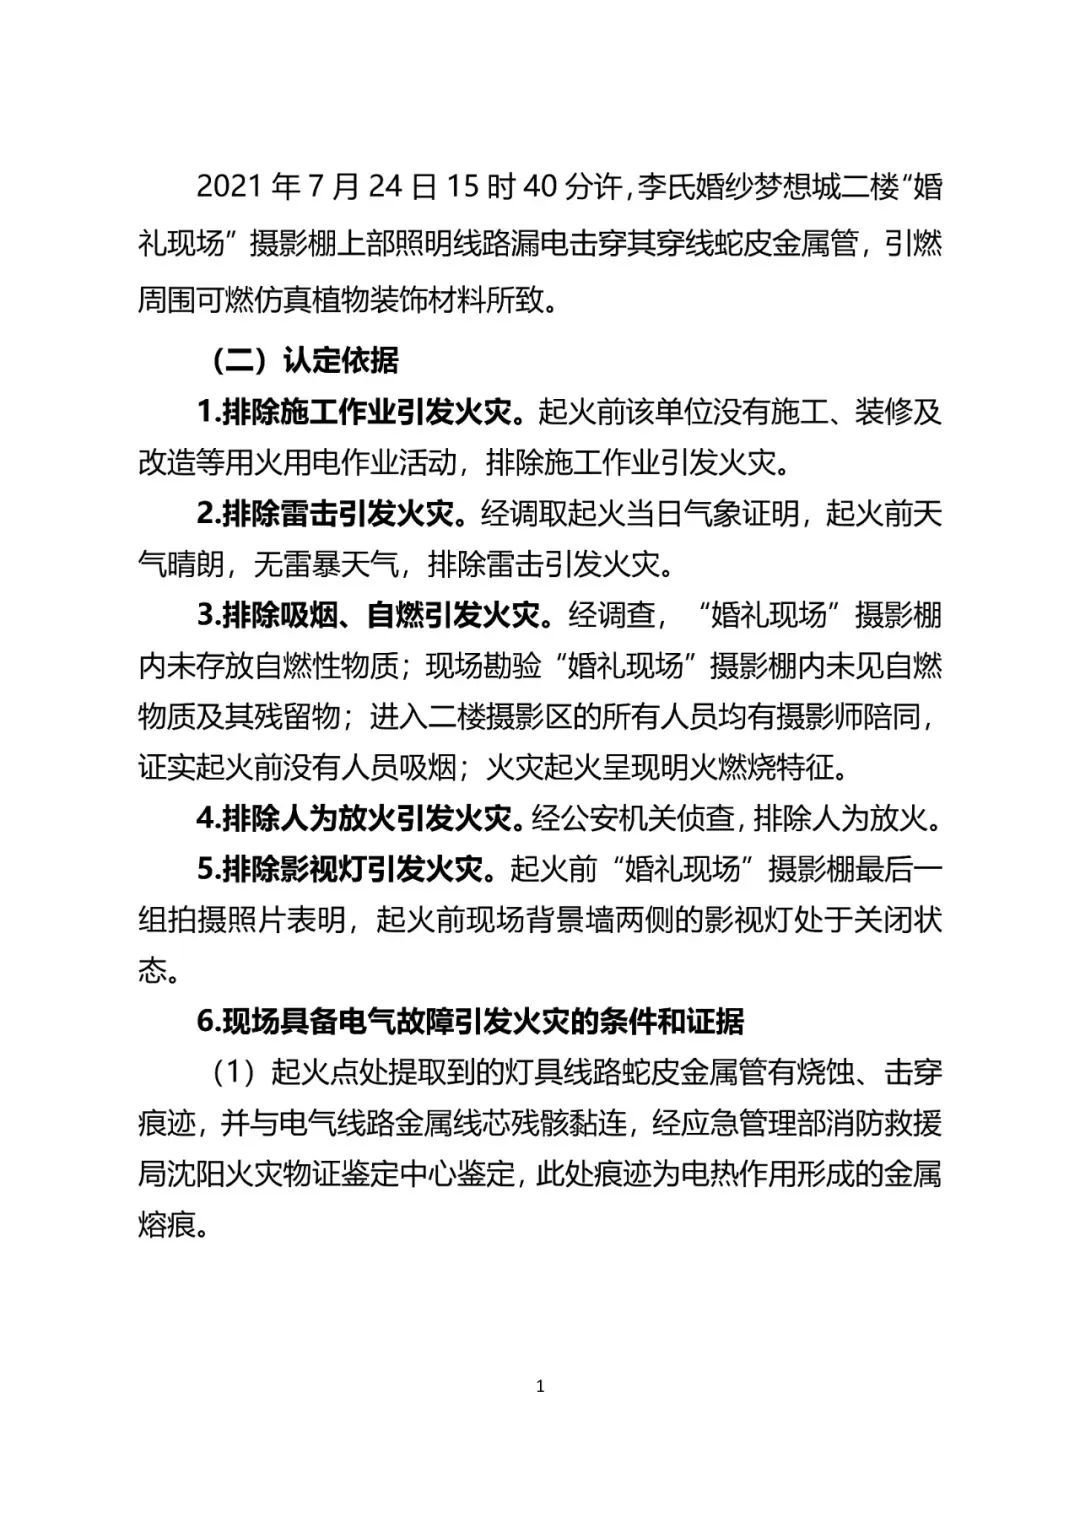 国务院成立安阳“11·21”火灾事故调查组_北京日报网